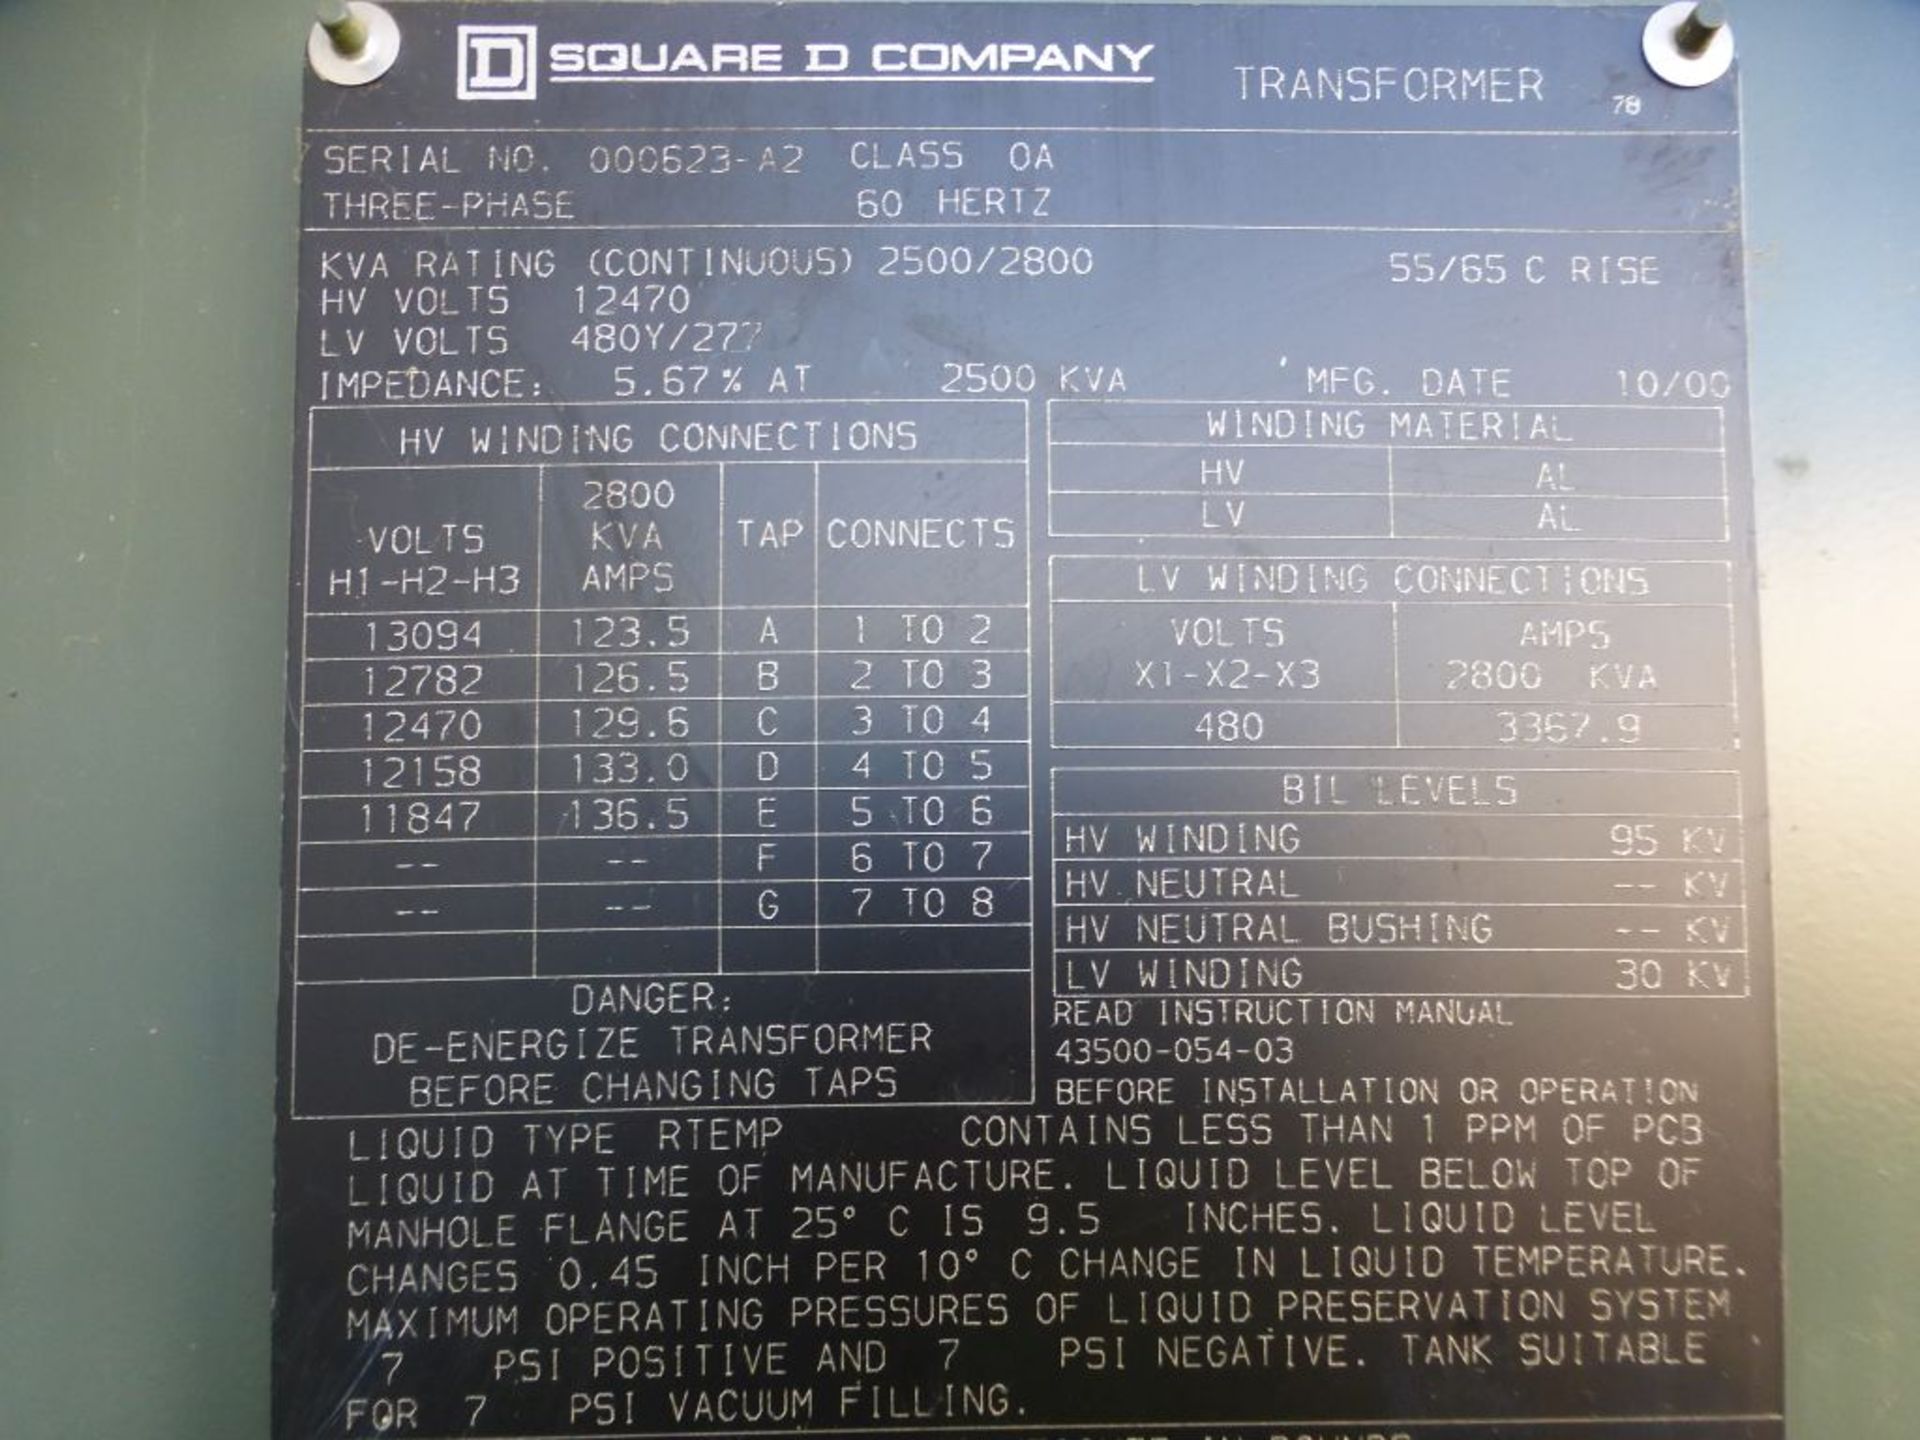 Square D 2500/2800 KVA Transformer | High Voltage: 12470V; Low Voltage: 480Y/277V; Tag: 231706 - Image 10 of 11